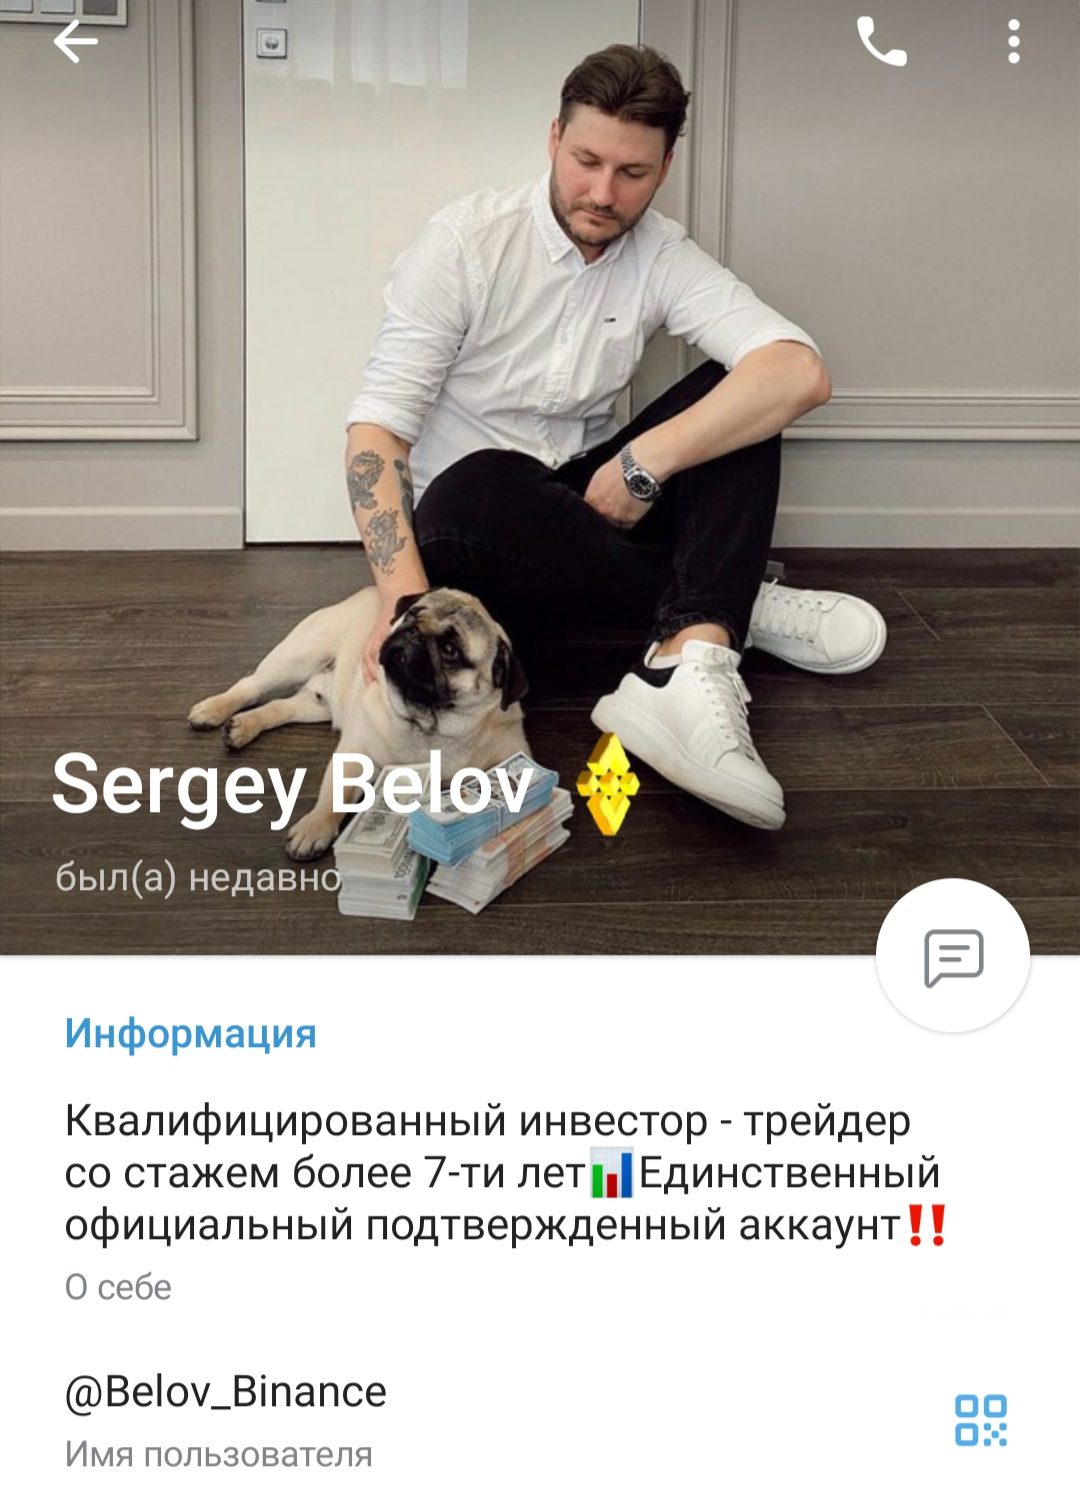 Сергей Белов трейдер